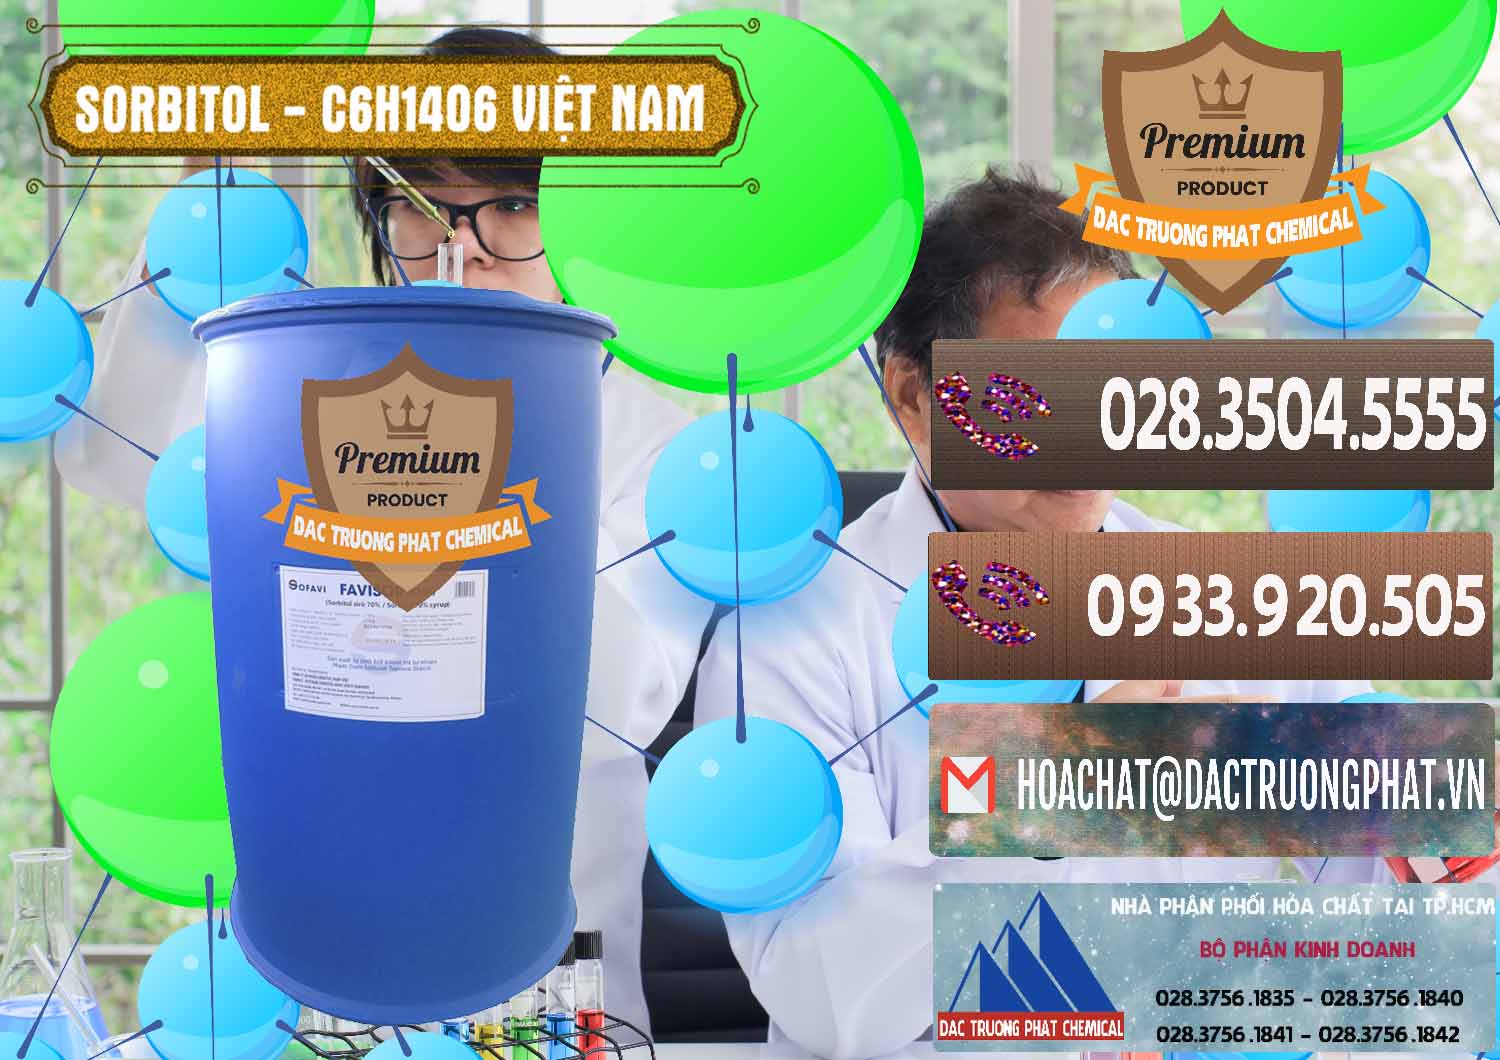 Cung cấp Sorbitol - C6H14O6 Lỏng 70% Food Grade Việt Nam - 0438 - Đơn vị chuyên cung cấp ( bán ) hóa chất tại TP.HCM - hoachatviet.net